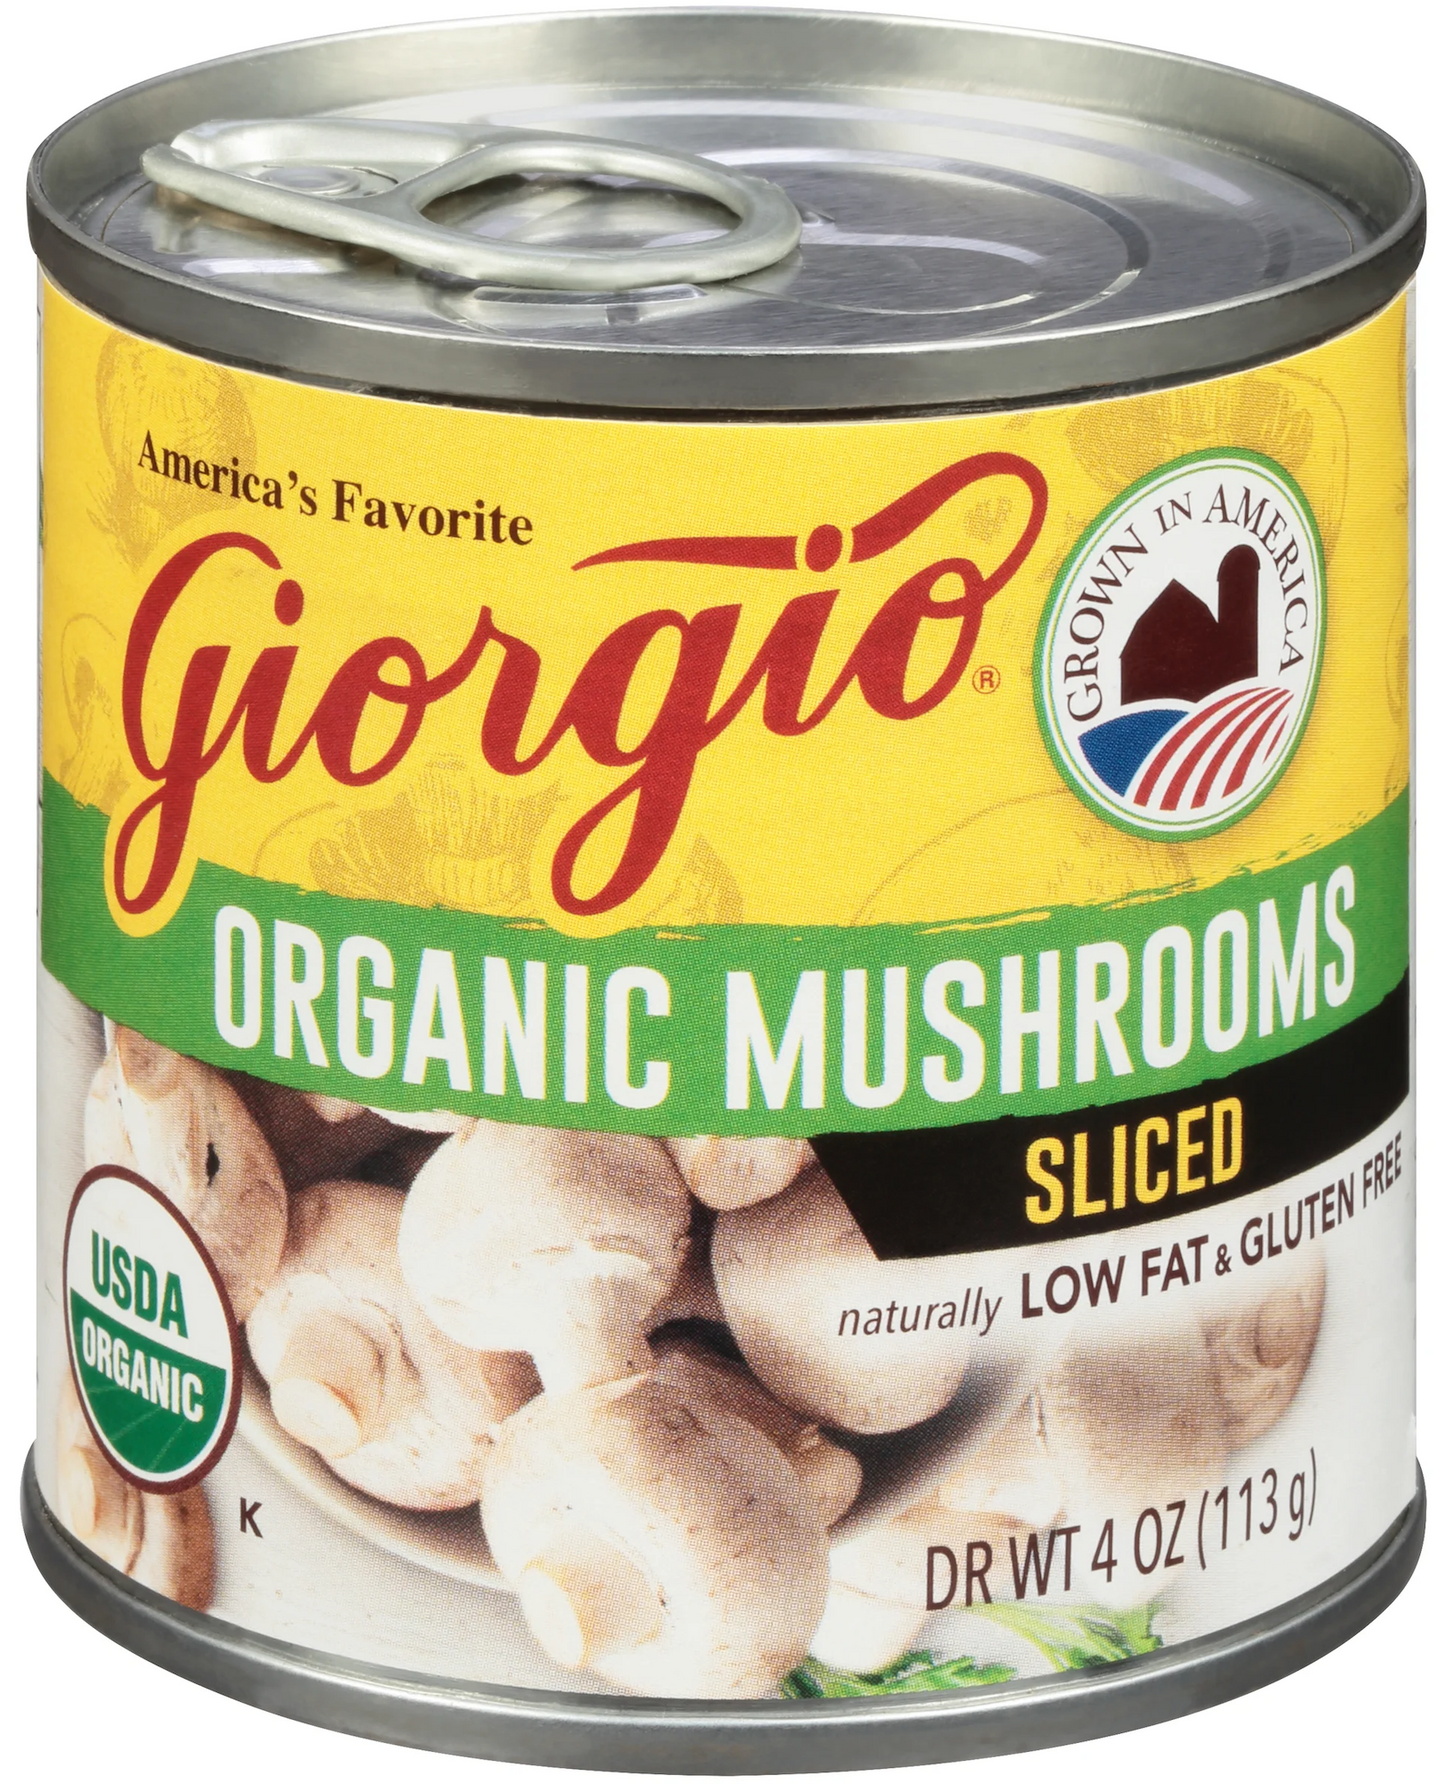 Organic Mushrooms Sliced